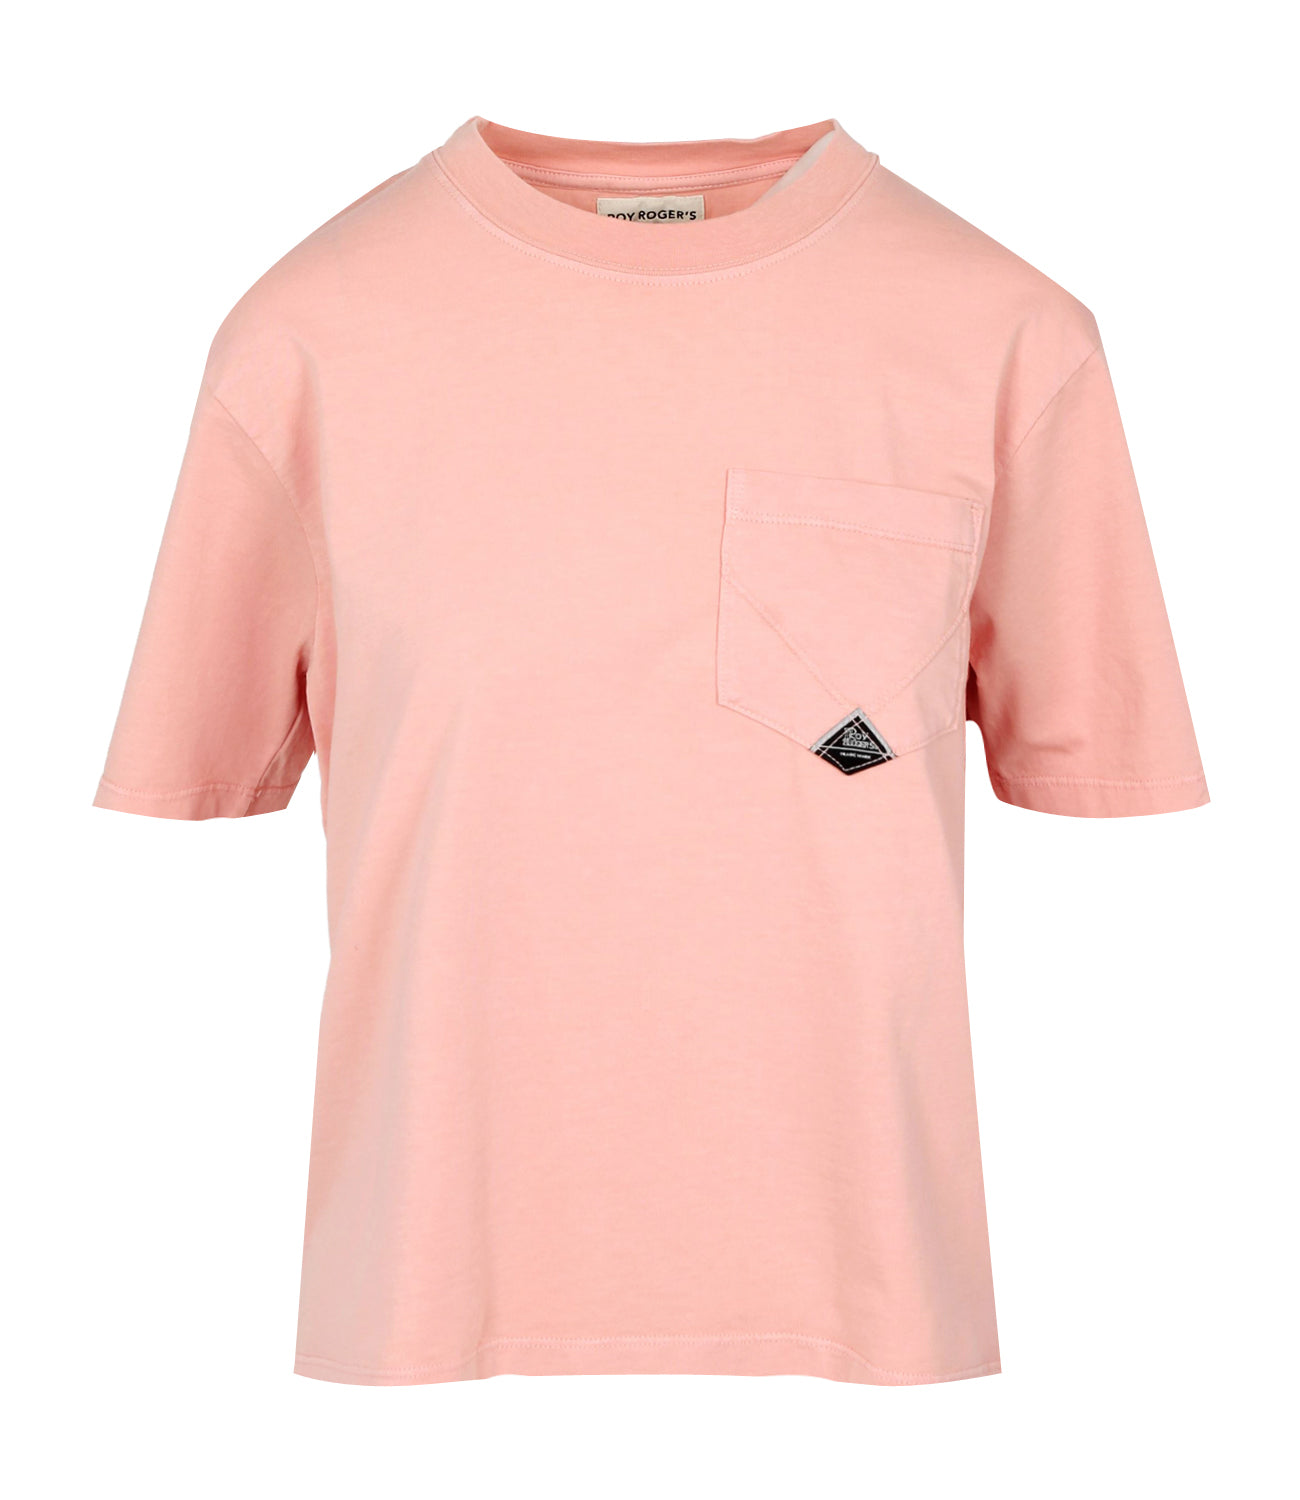 Roy Roger's | Antique Pink Pocket T-Shirt